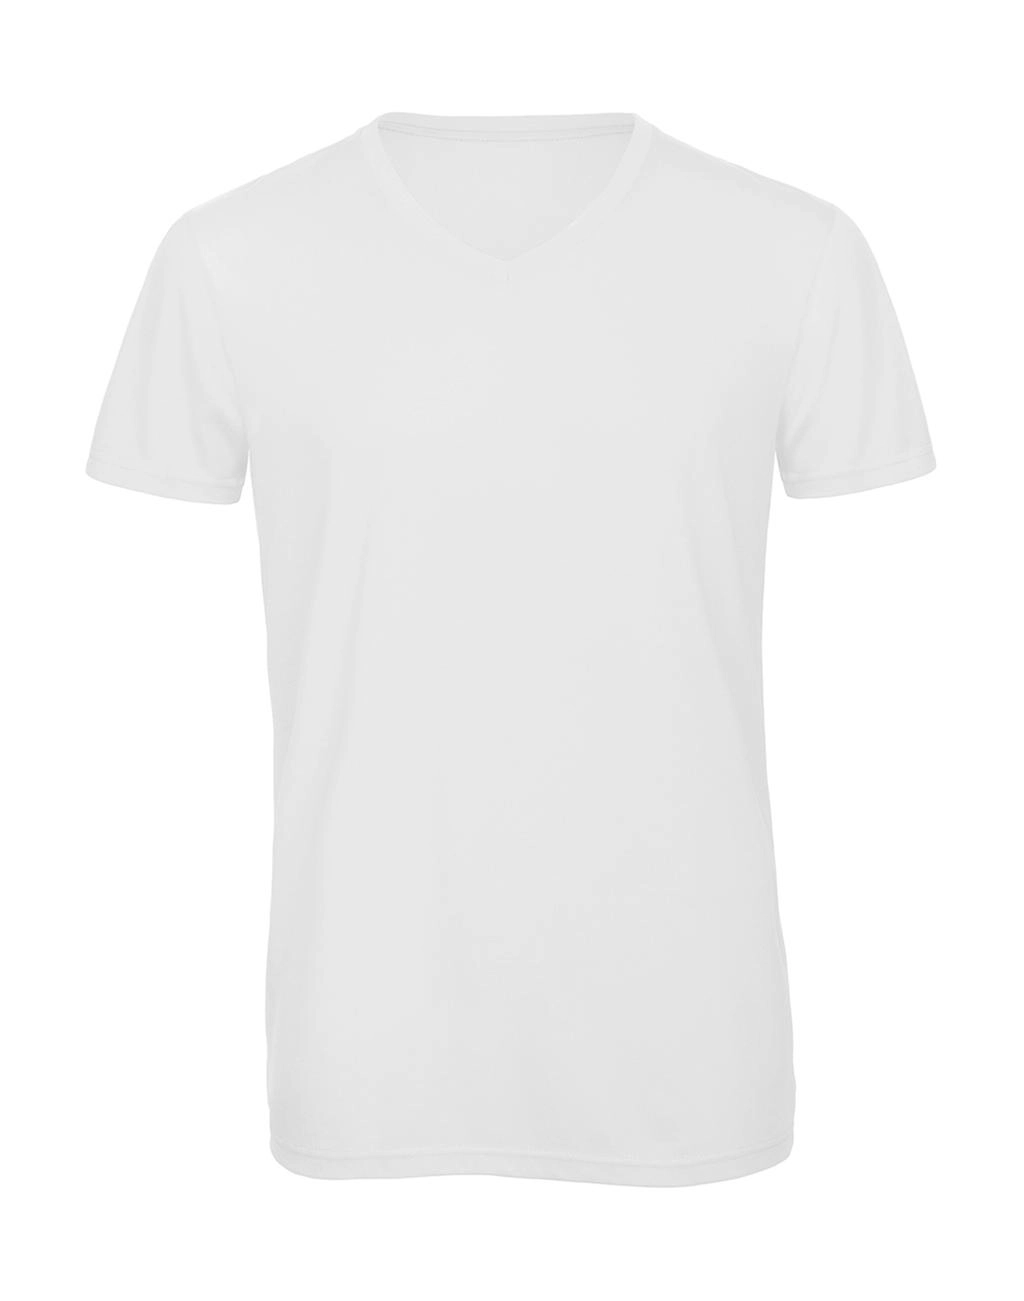 V Triblend/men T-Shirt zum Besticken und Bedrucken in der Farbe White mit Ihren Logo, Schriftzug oder Motiv.